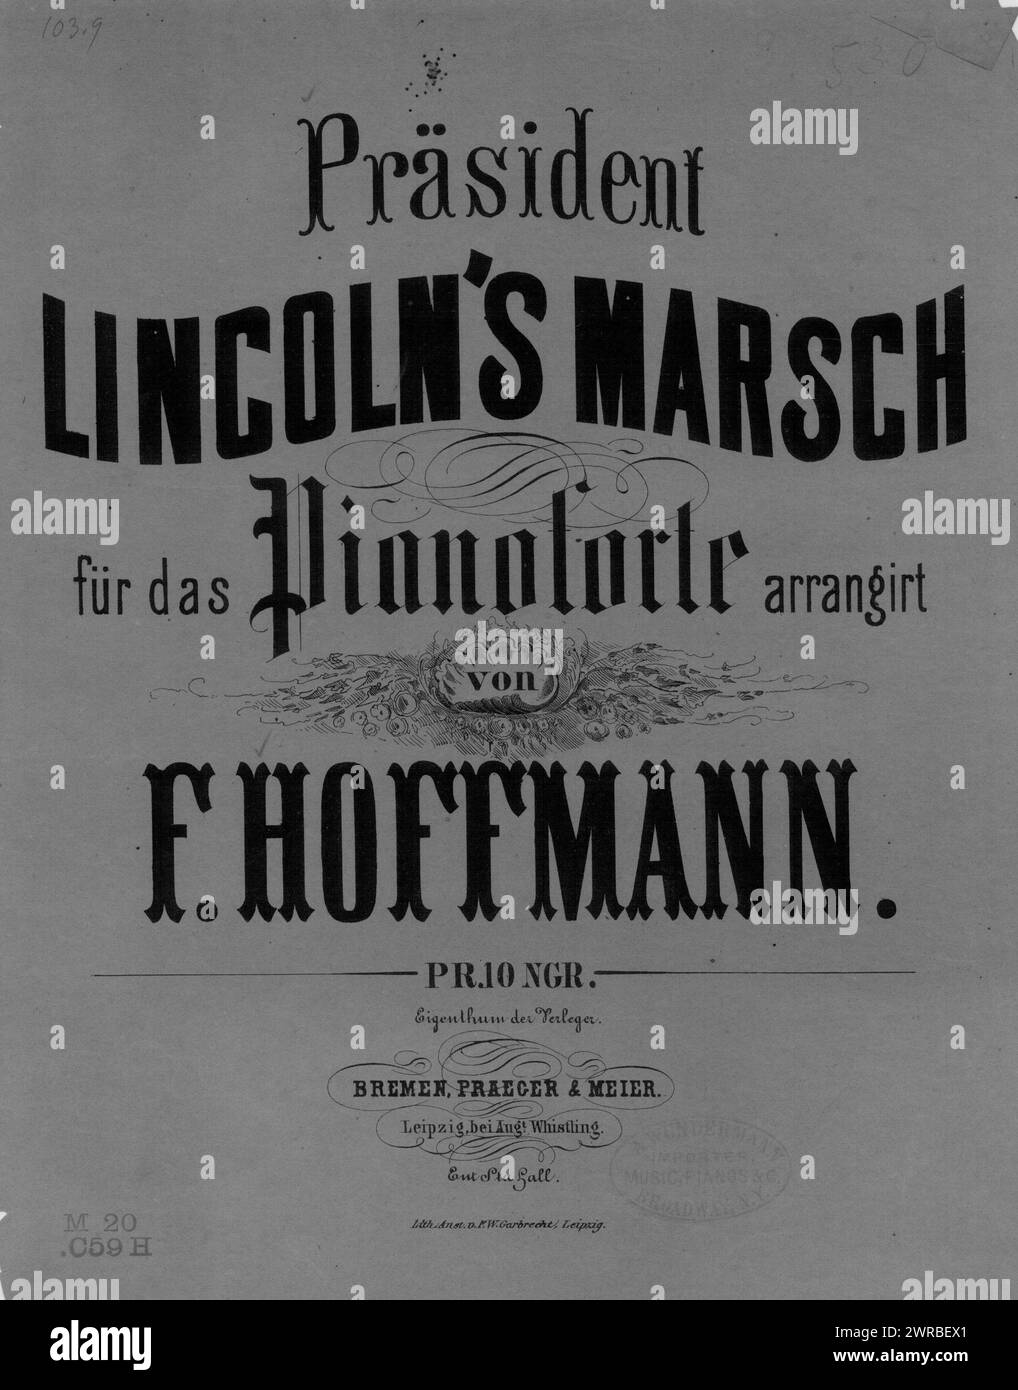 Praesident Lincoln - marsch, Hoffmann, F. (arranger), Bremen, Praeger & Meier, Leipzig., United States, History, Civil War, 1861-1865, Songs and music Stock Photo